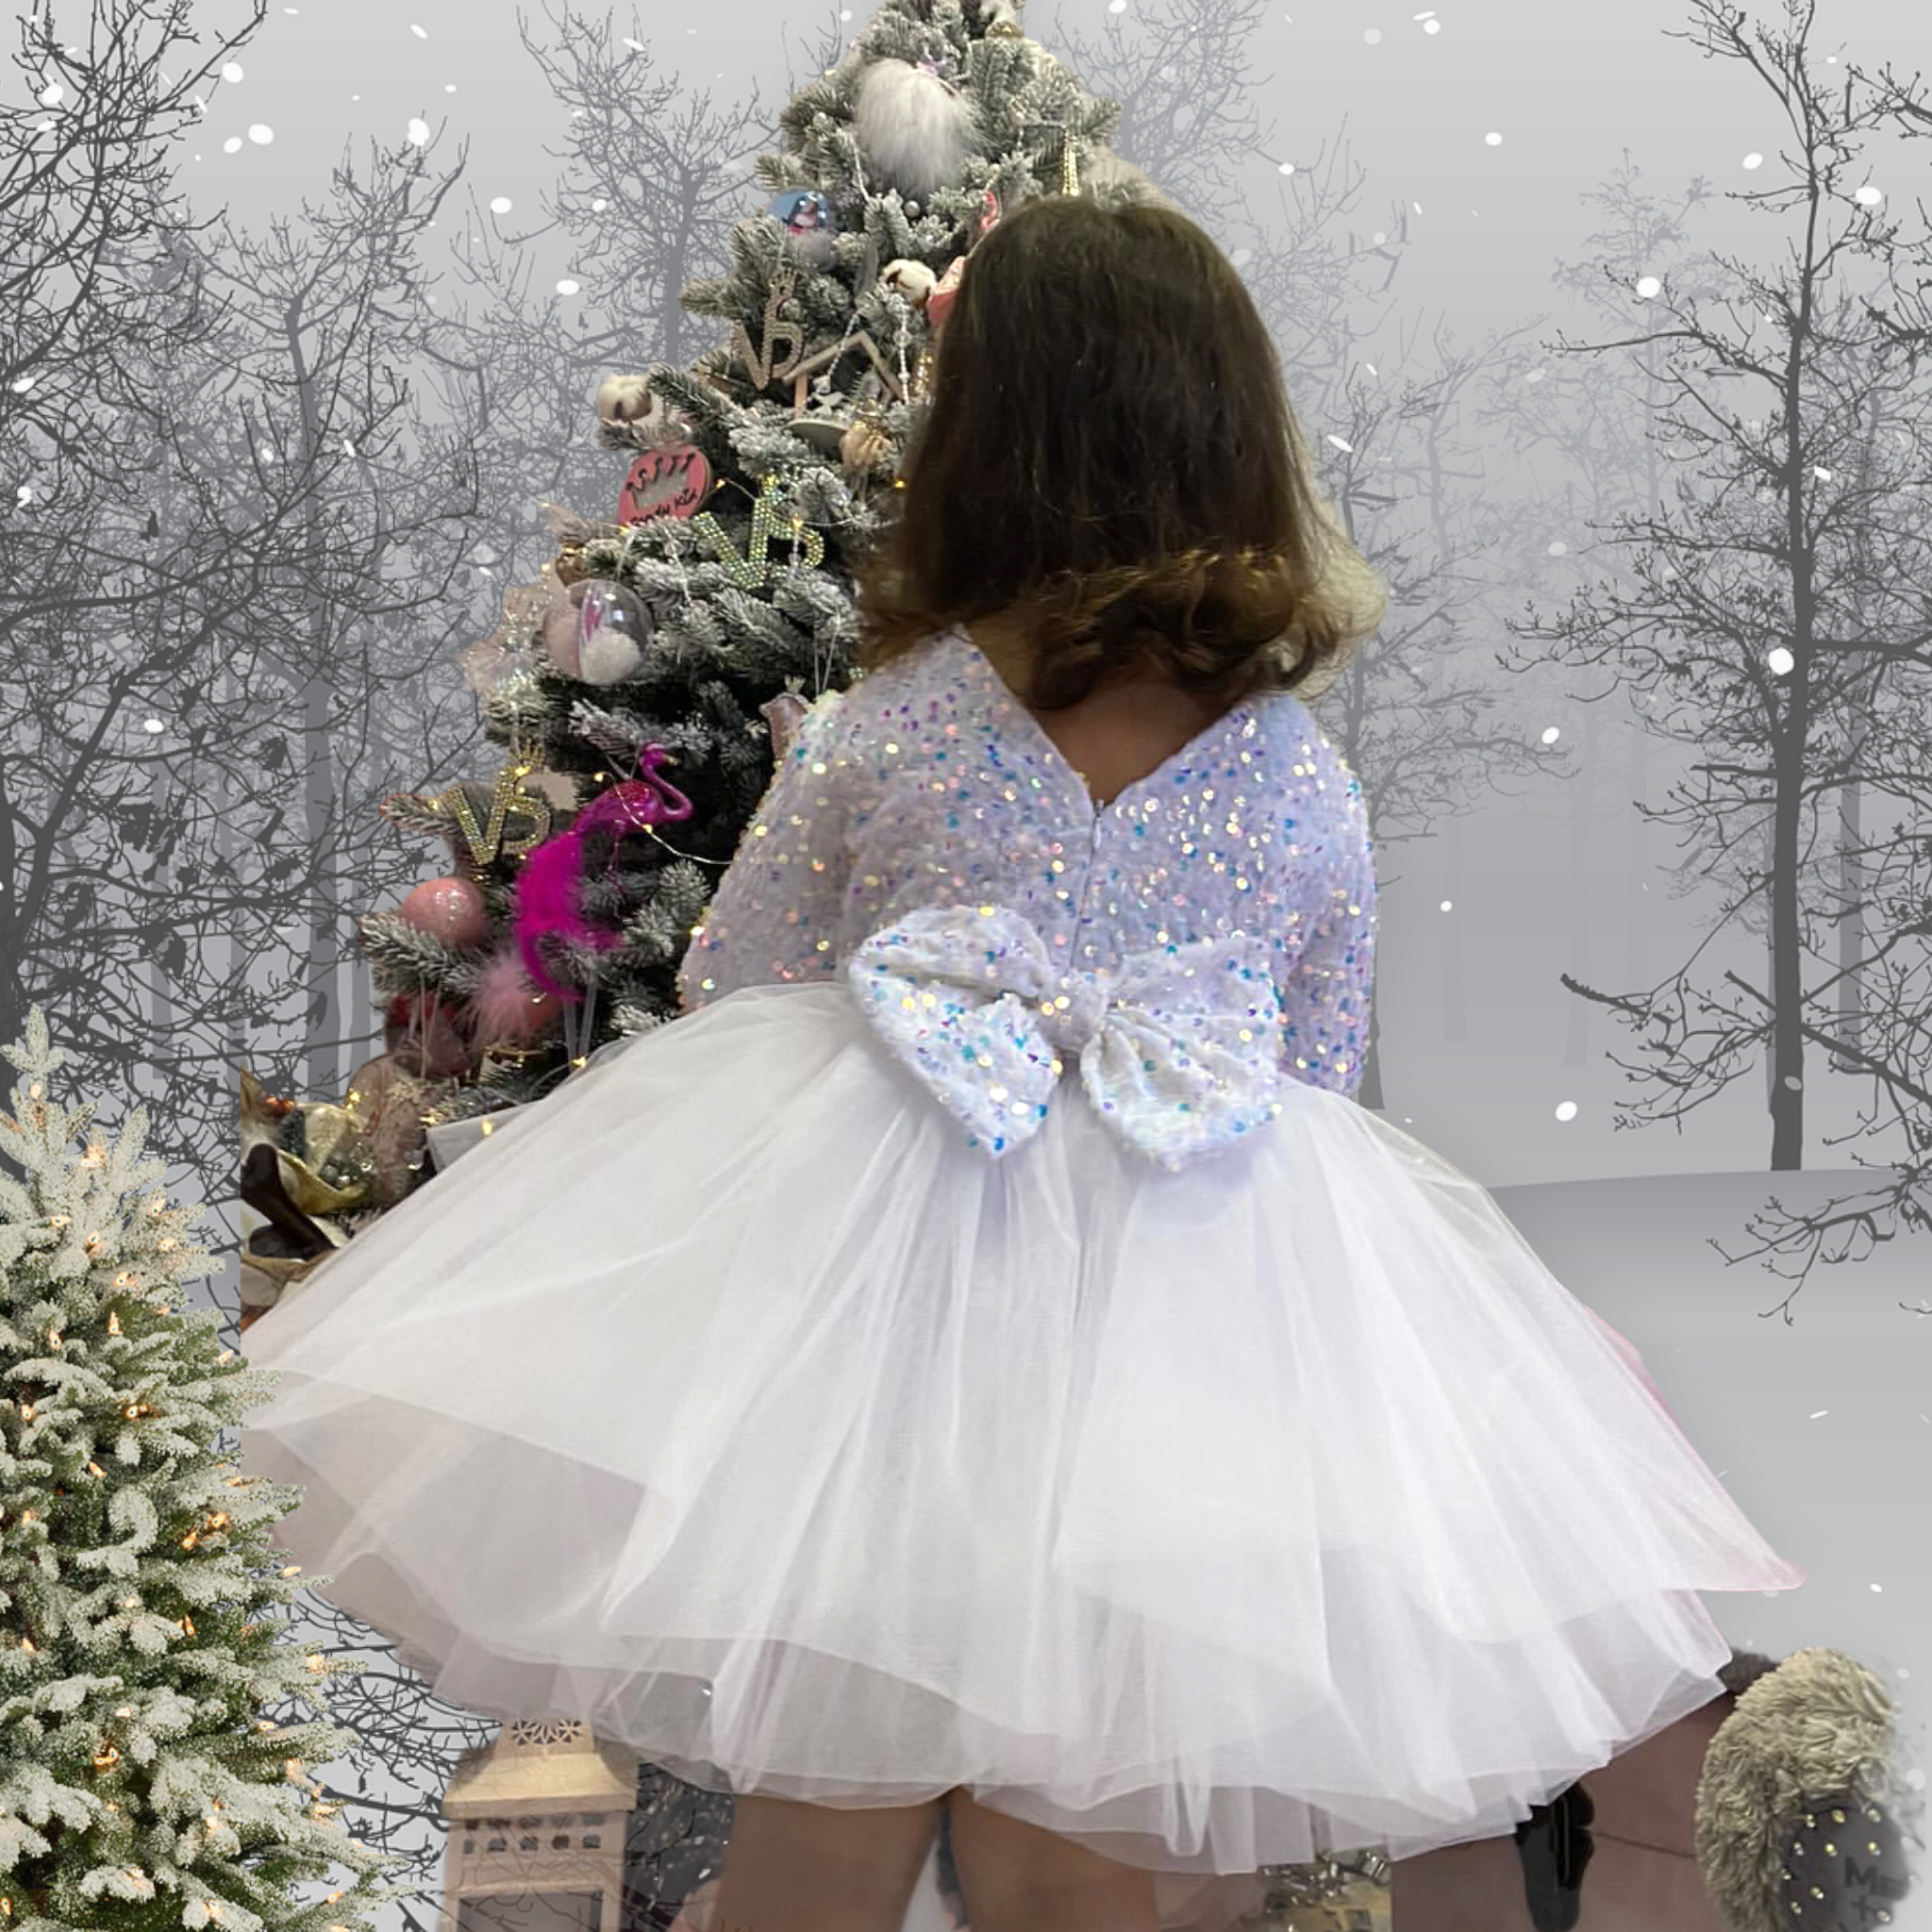 Snow dress